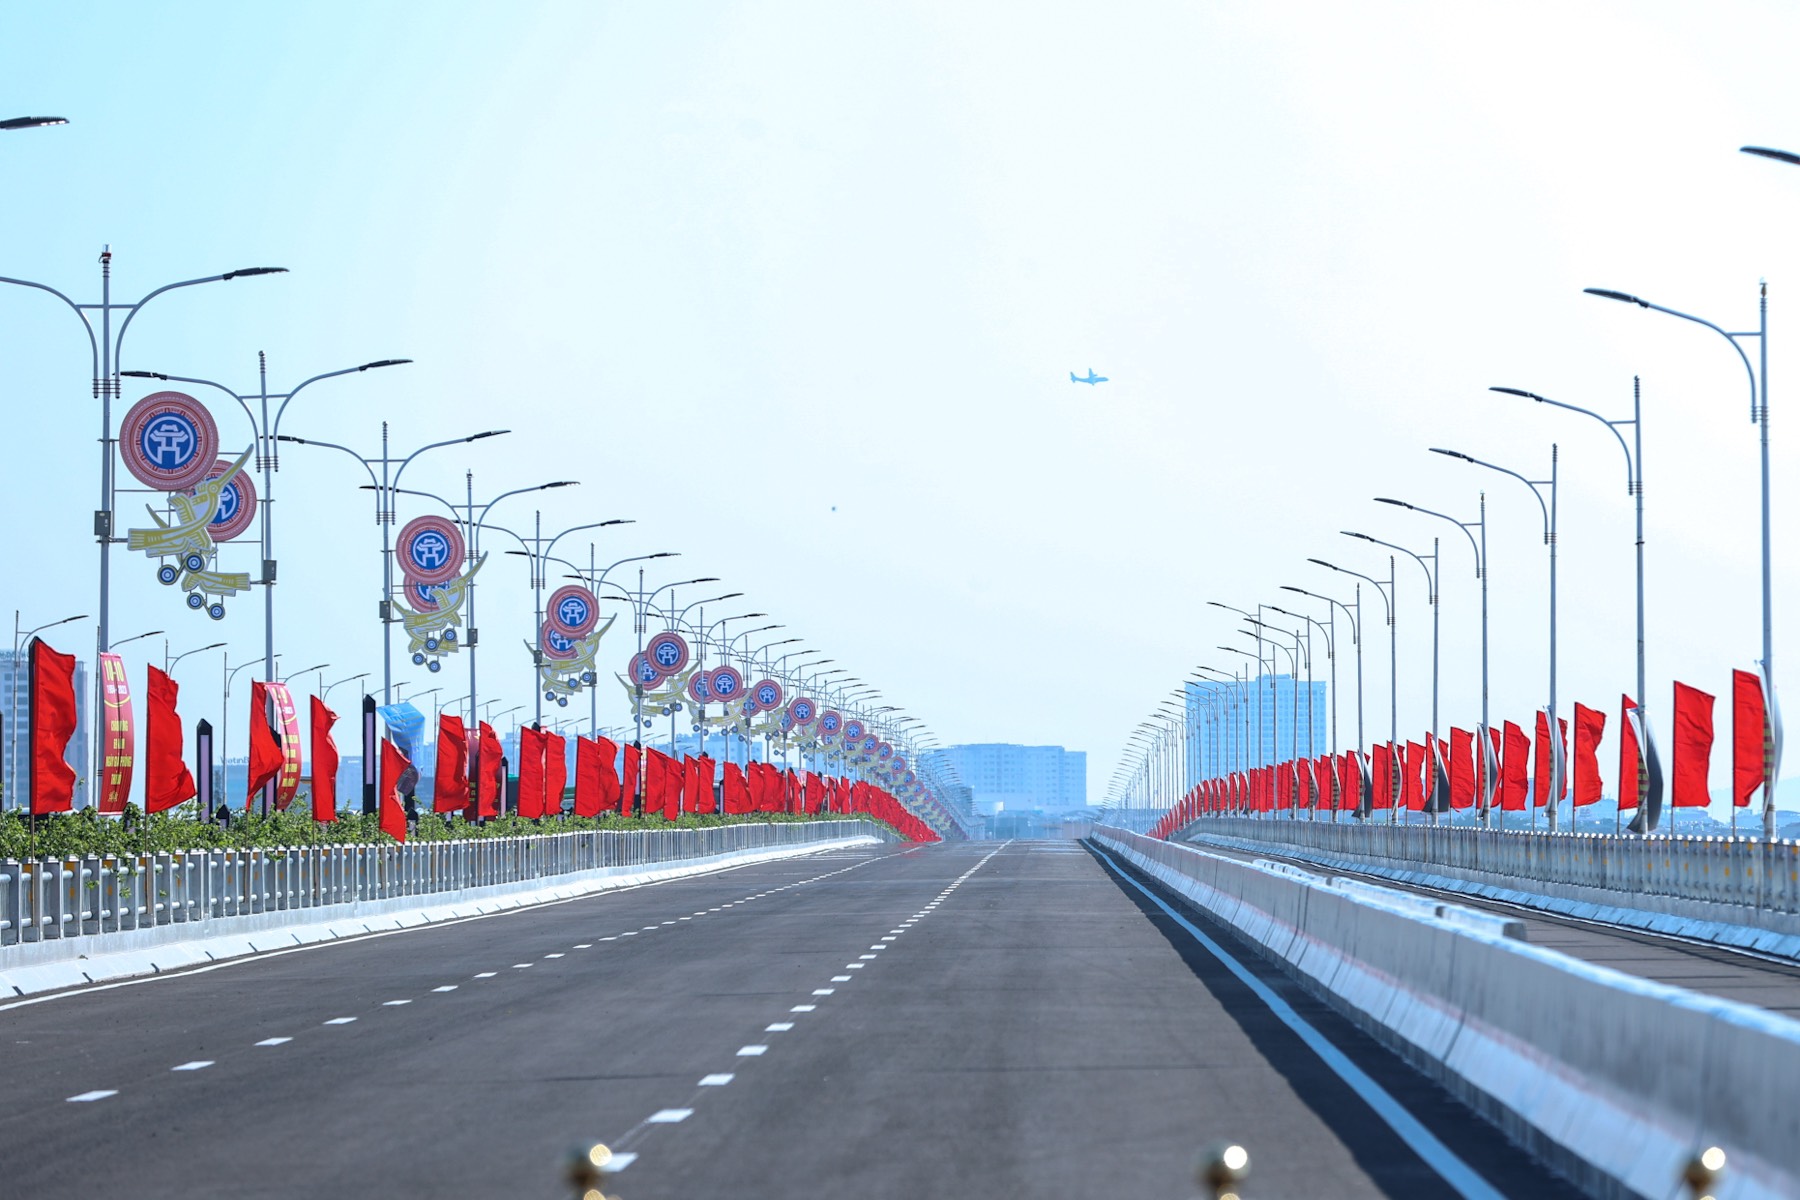 Cầu Vĩnh Tuy giai đoạn 2, dài 3,5 km, rộng 19,25 m với 4 làn xe, bao gồm 3 làn ô tô và một làn xe hỗn hợp. 